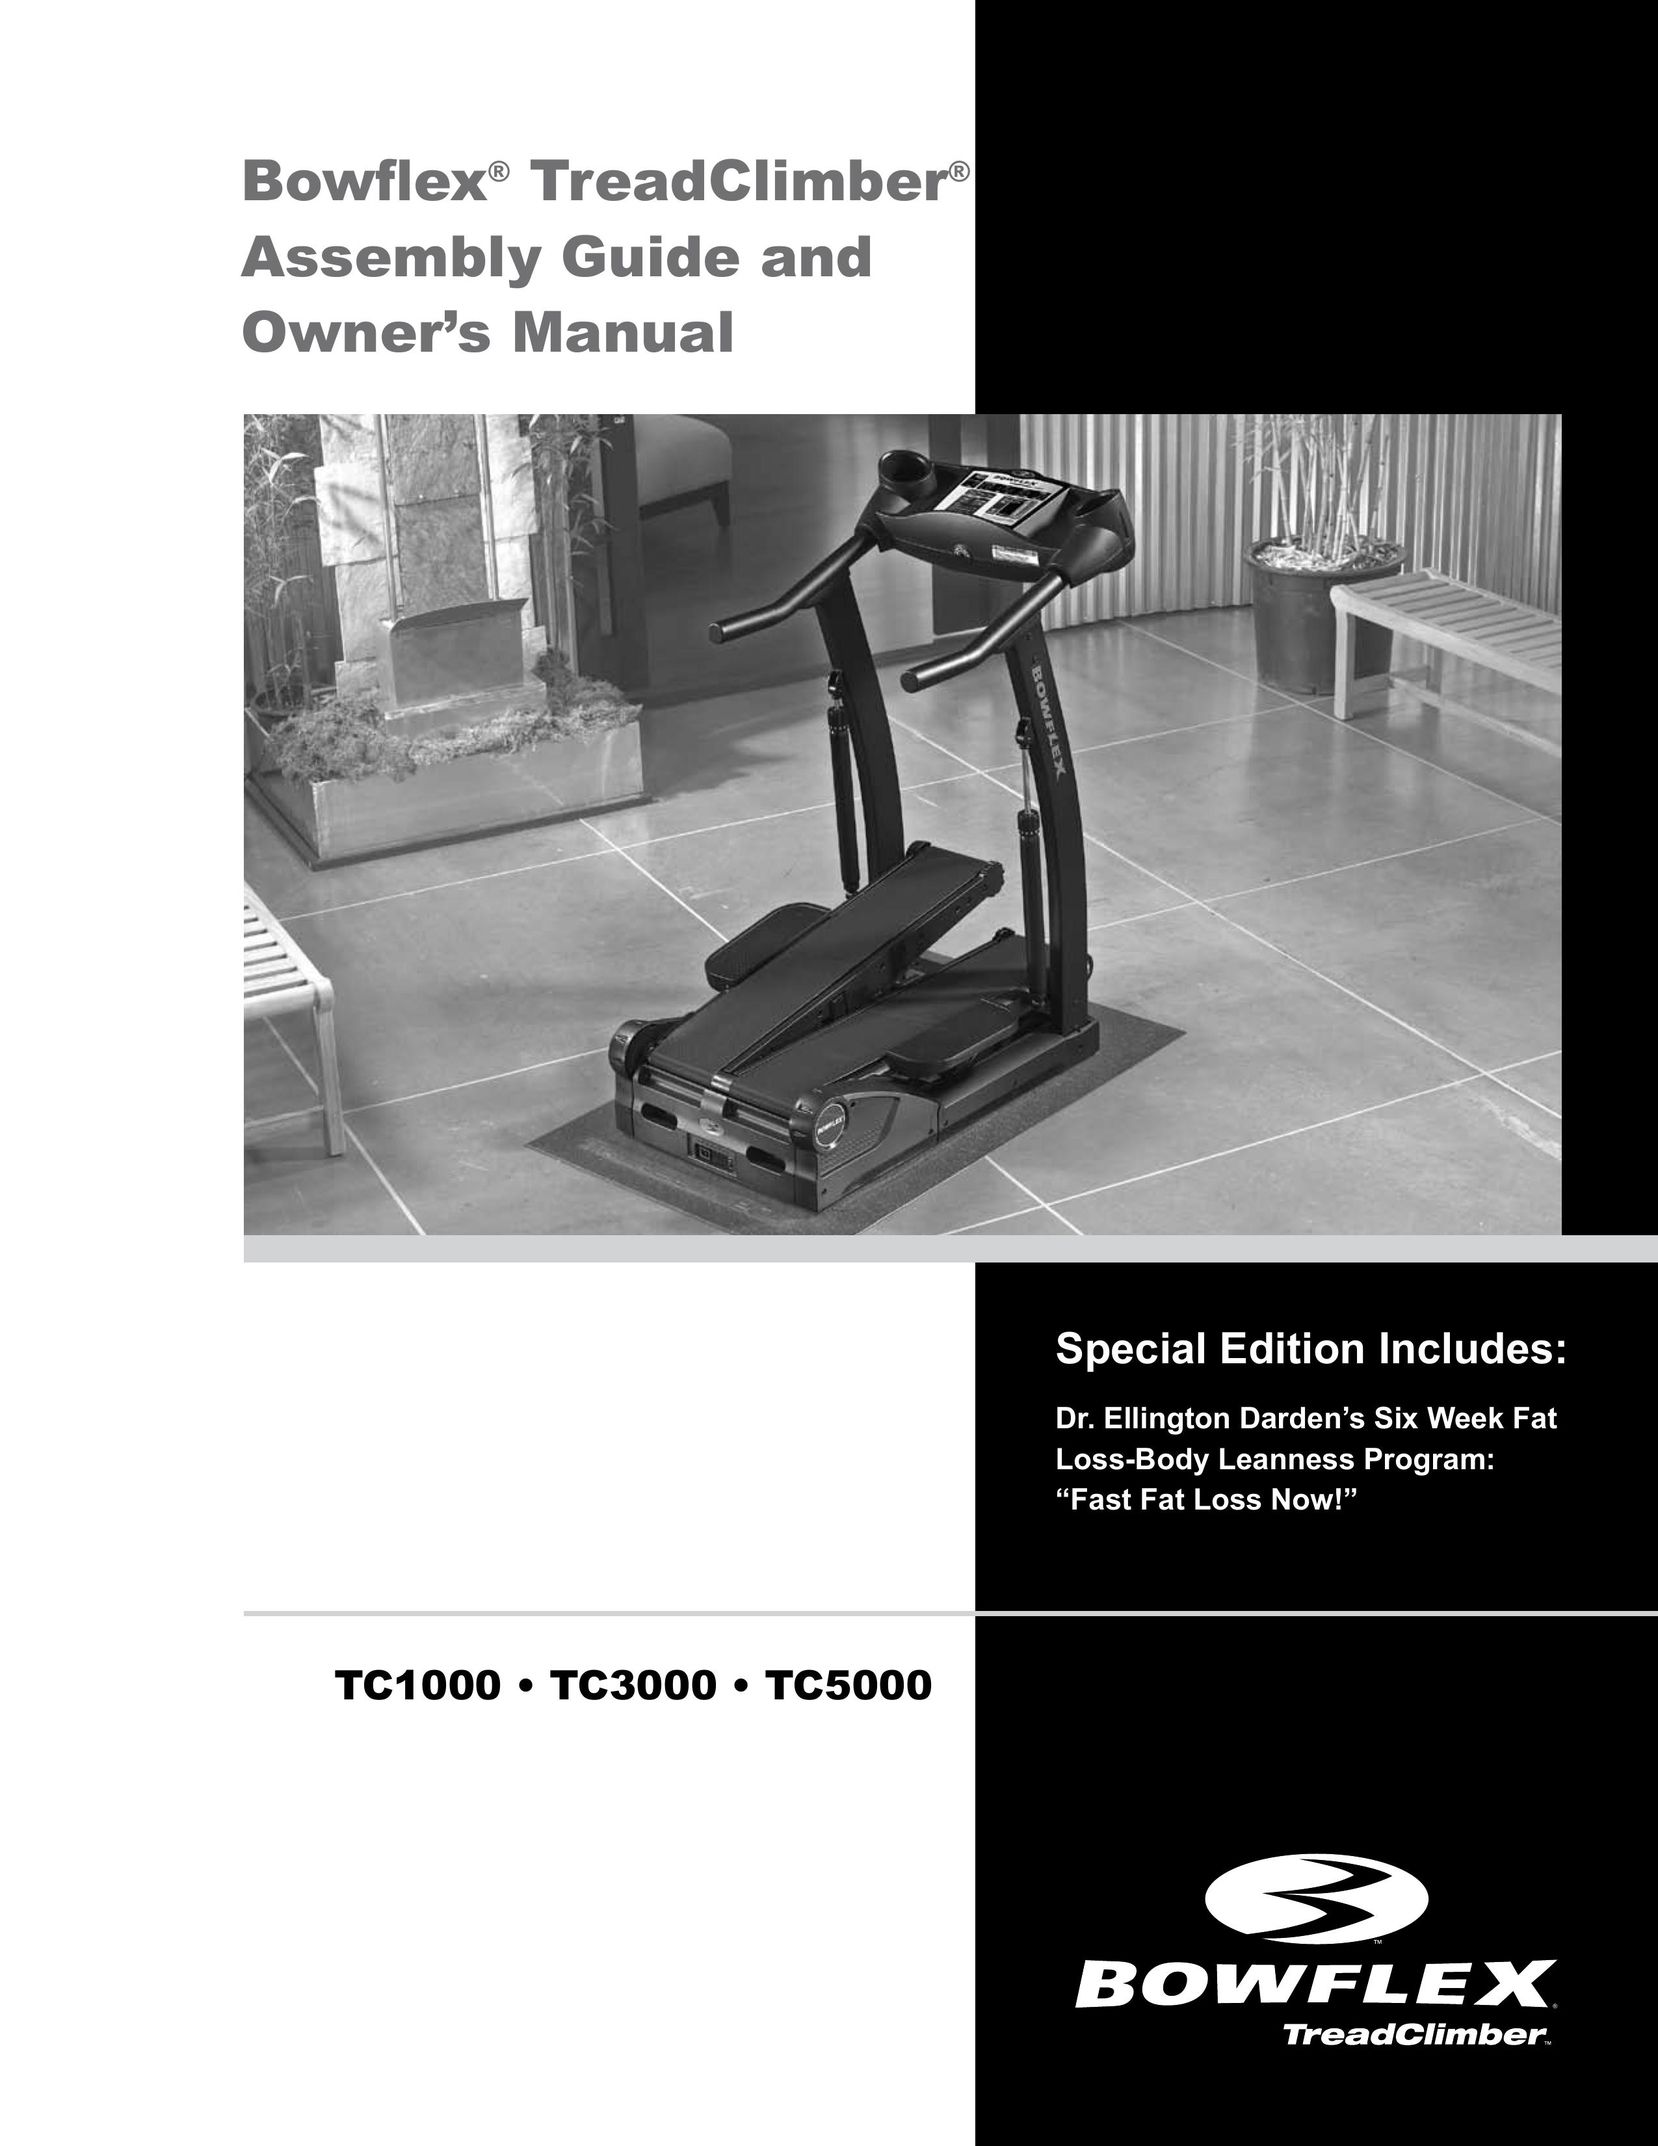 Bowflex TC5000 Home Gym User Manual